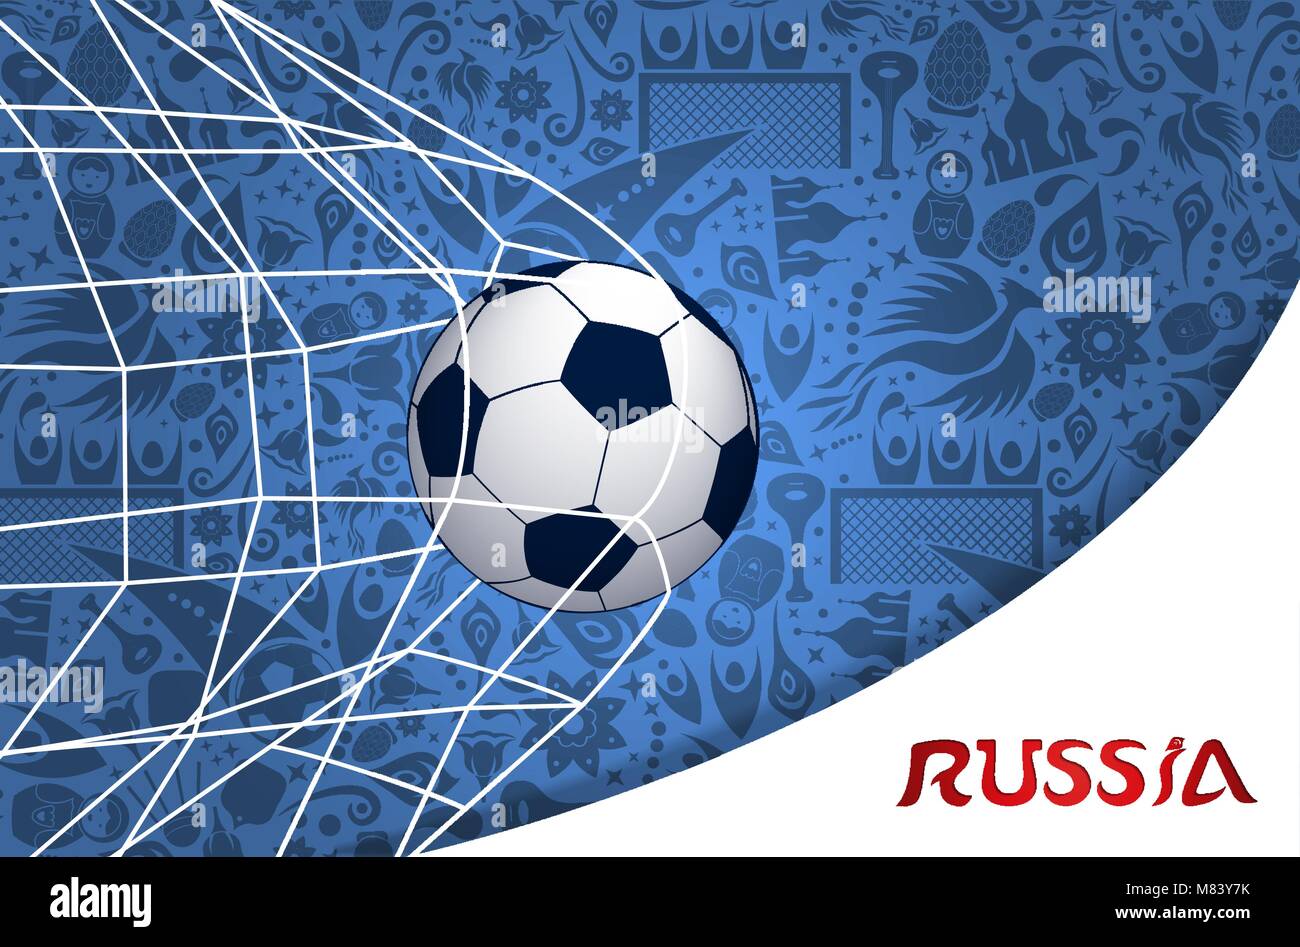 Russland Abbildung mit Fußballtor und traditionelle russische Kultur Hintergrund. EPS 10 Vektor. Stock Vektor